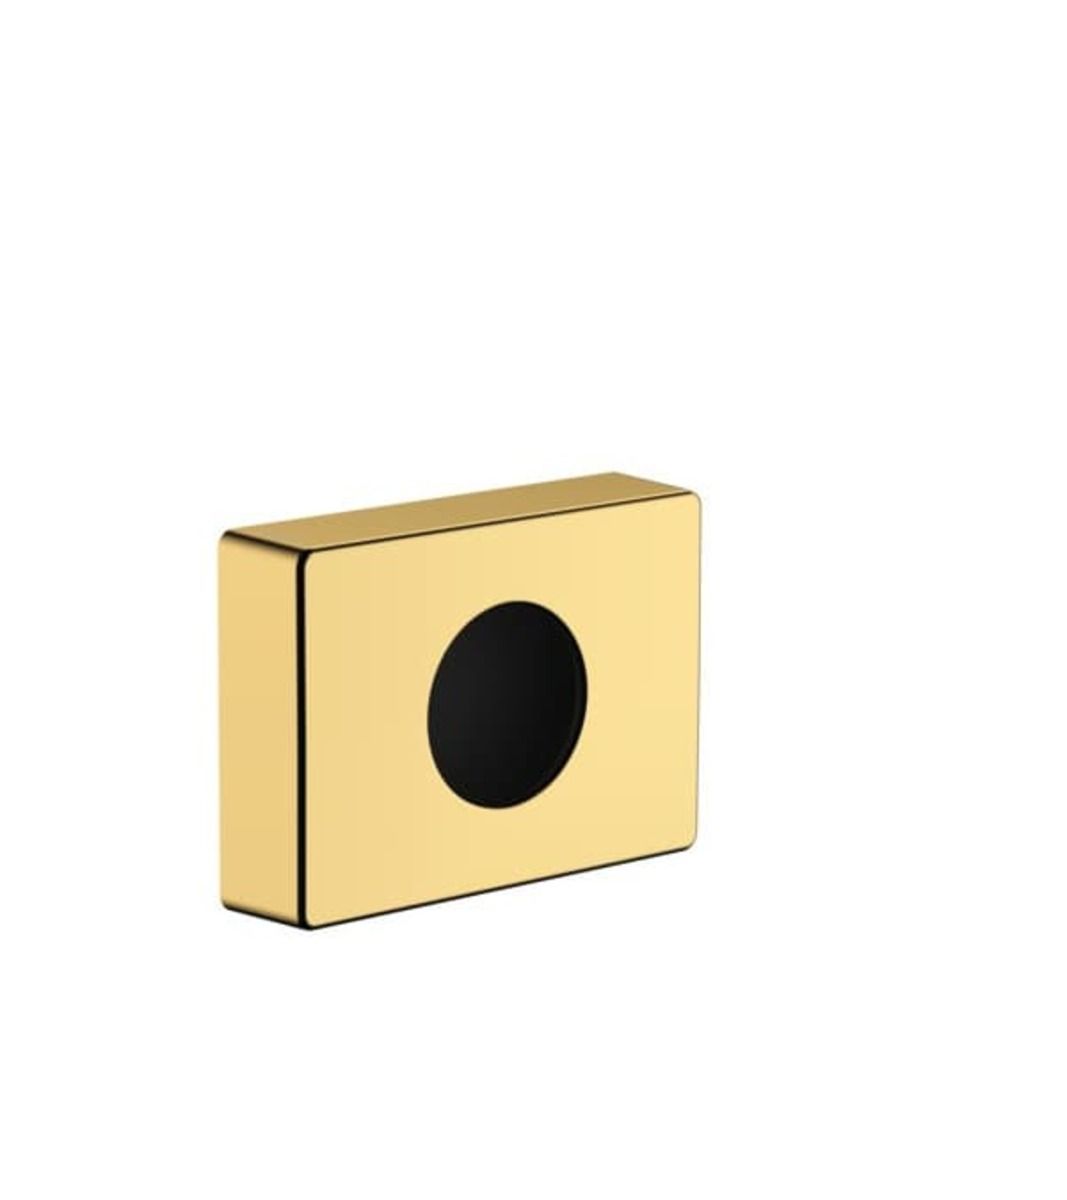 Zásobník na hygienické sáčky Hansgrohe AddStoris leštěný vzhled zlata 41773990 - Siko - koupelny - kuchyně